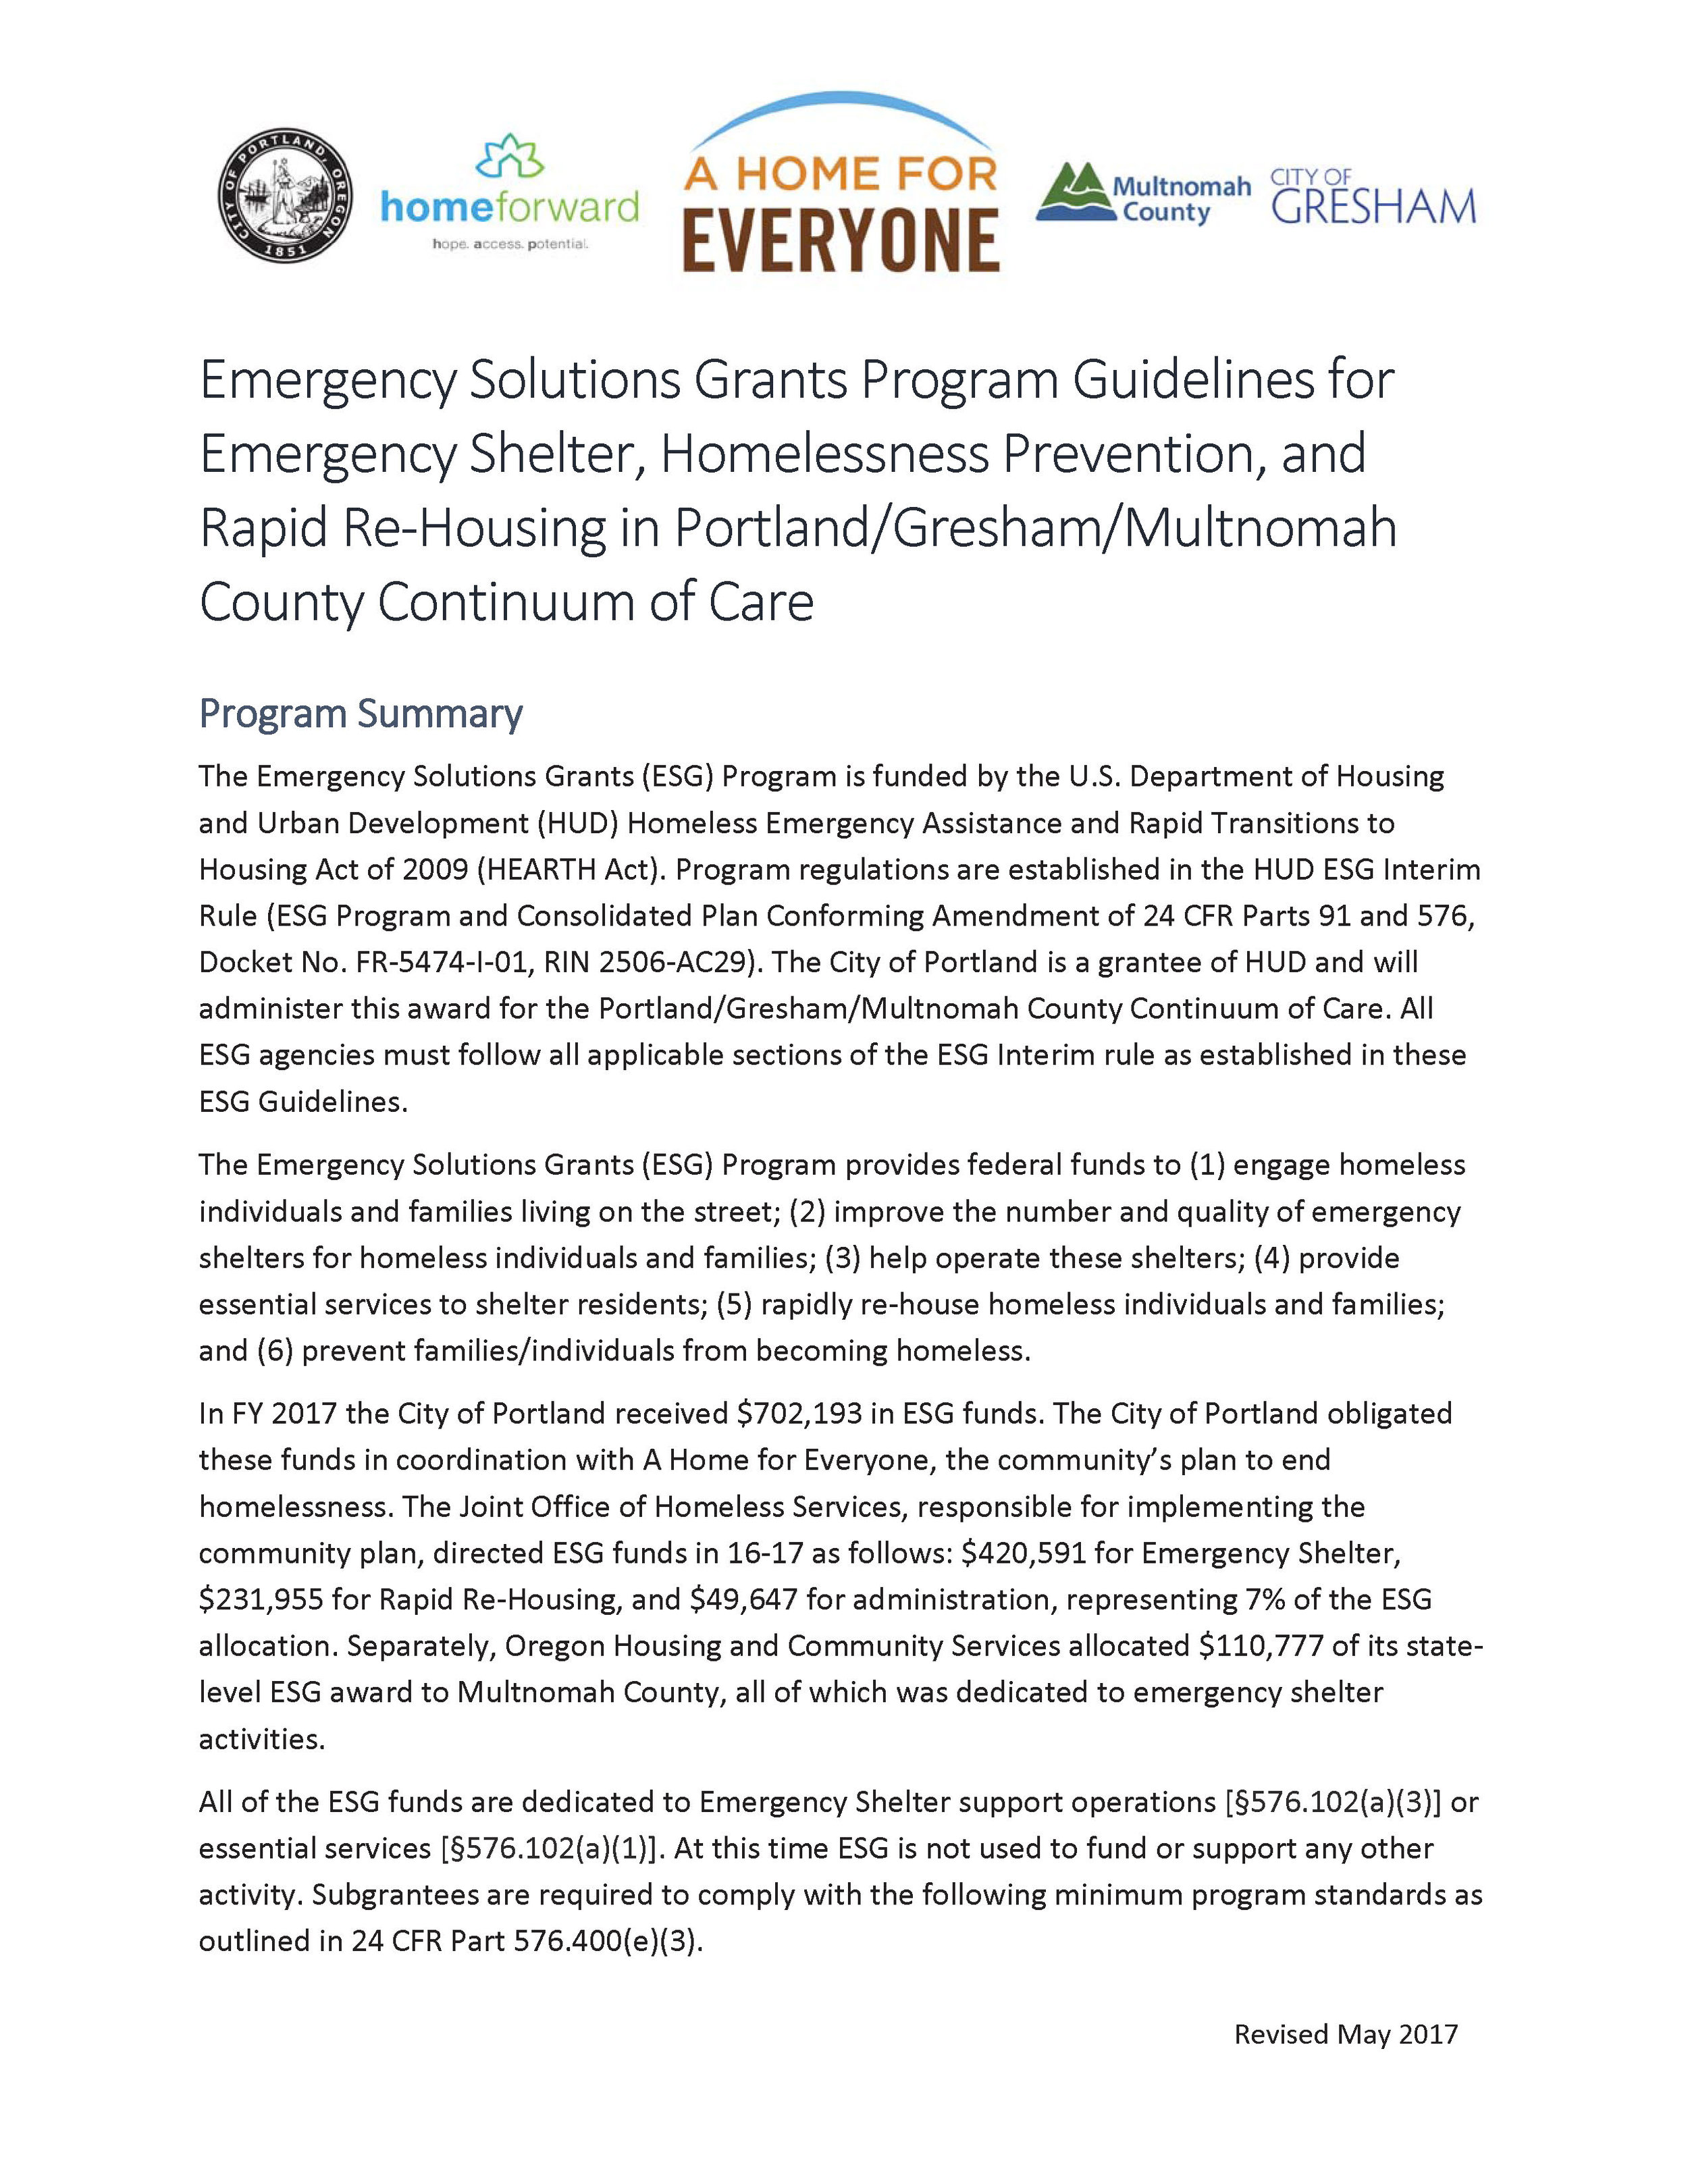 Read: ESG Guidelines for Portland/Gresham/Multnomah County